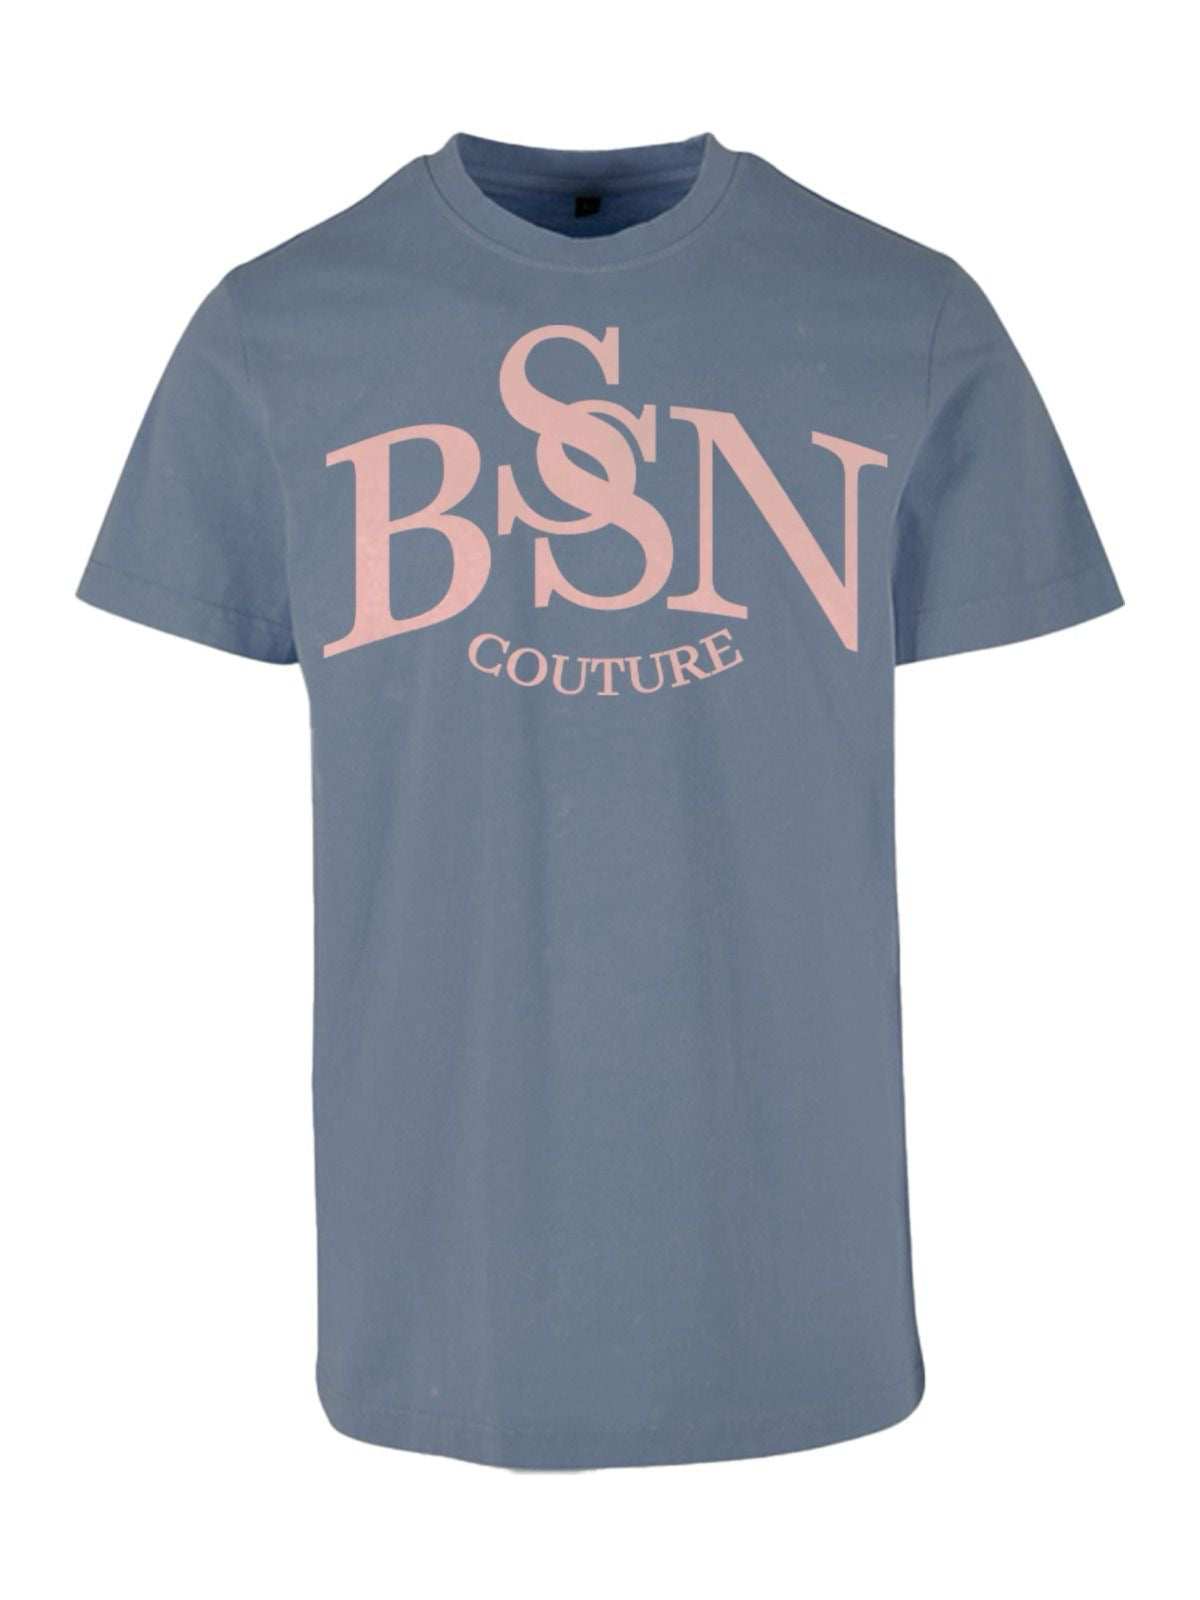 BSN COUTURE shirt - Grey peach